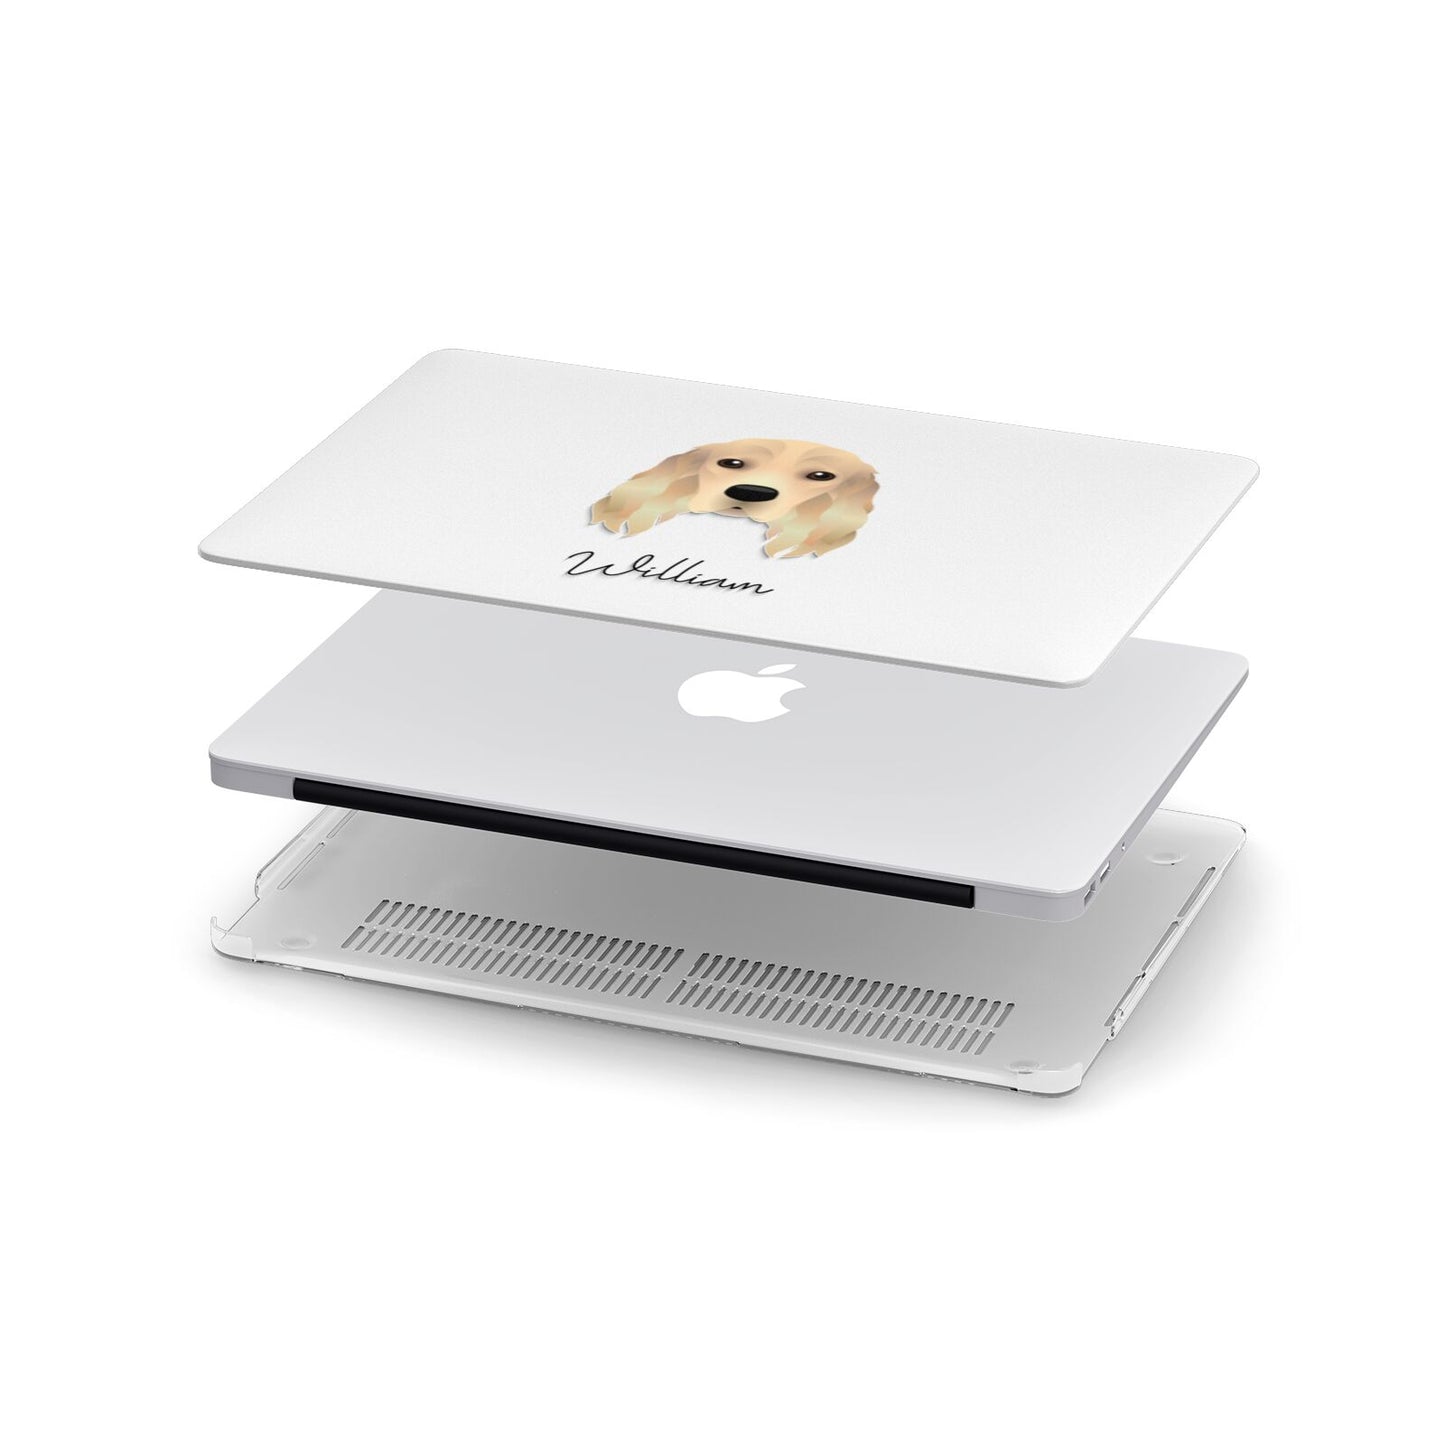 Cocker Spaniel Personalised Apple MacBook Case in Detail